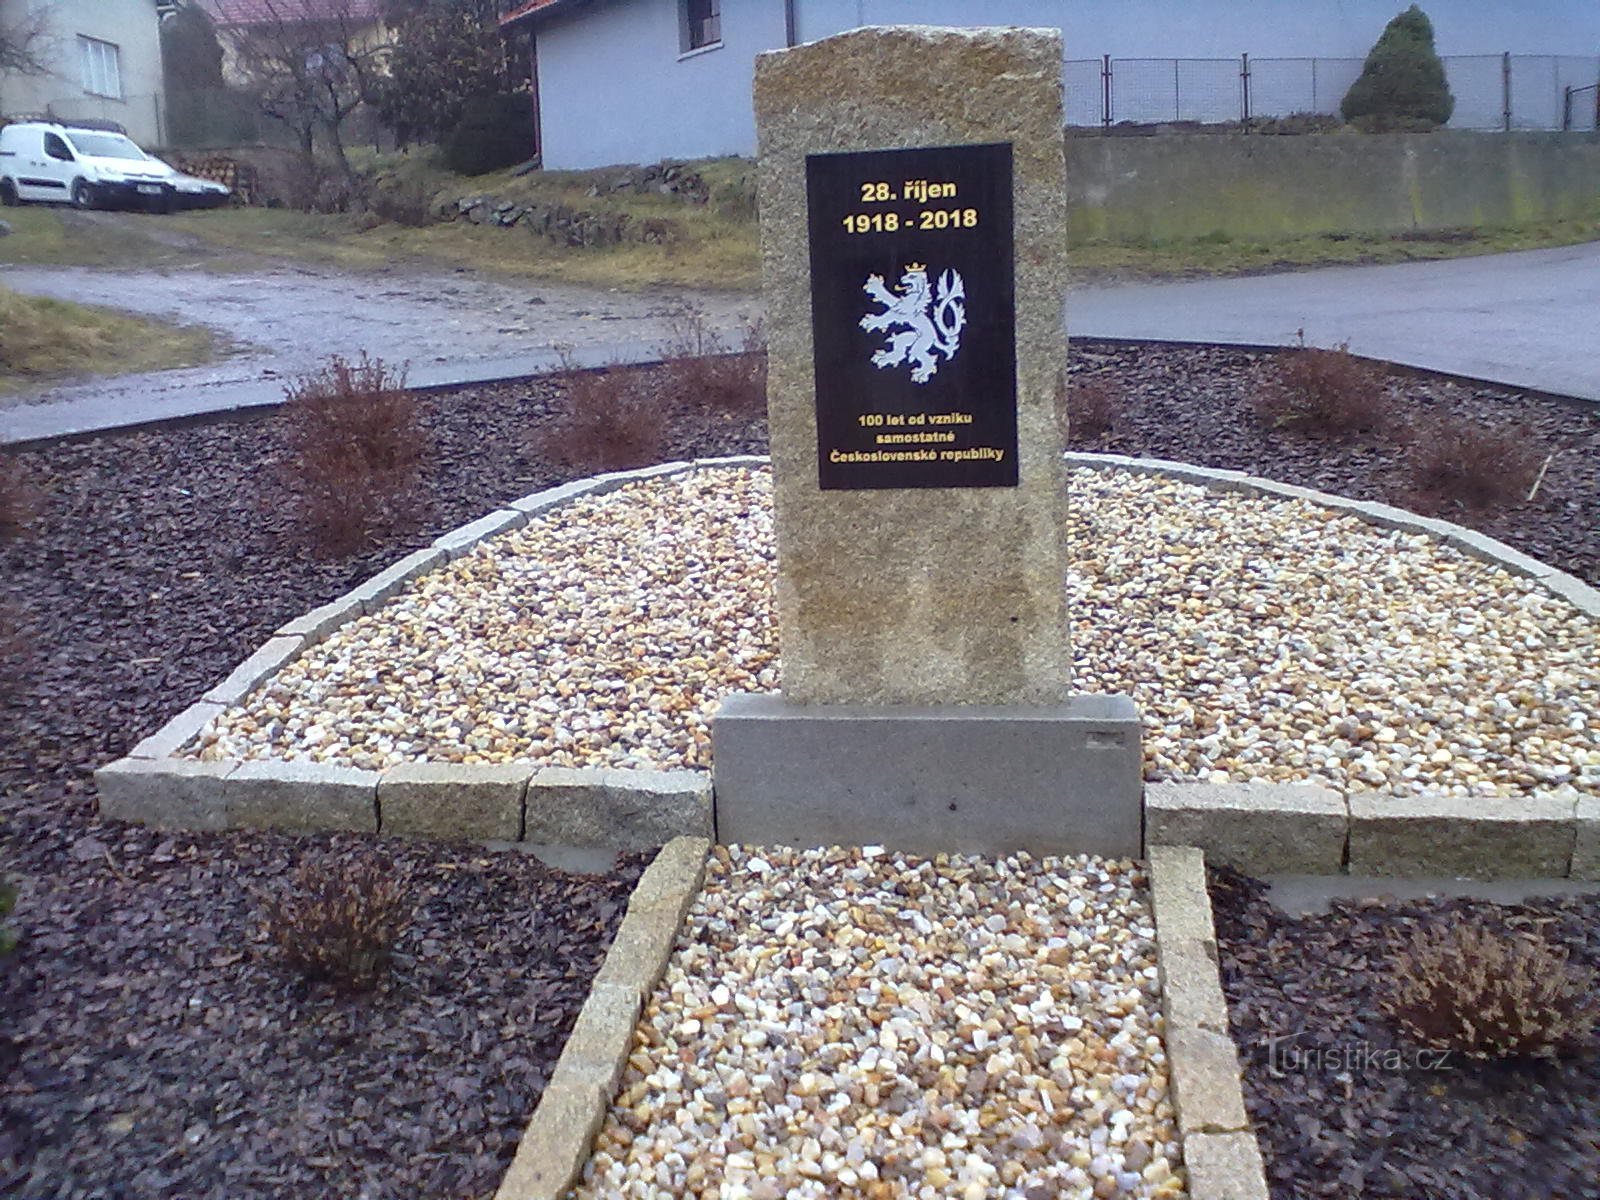 Το μνημείο για την ίδρυση της δημοκρατίας στο Vokov.